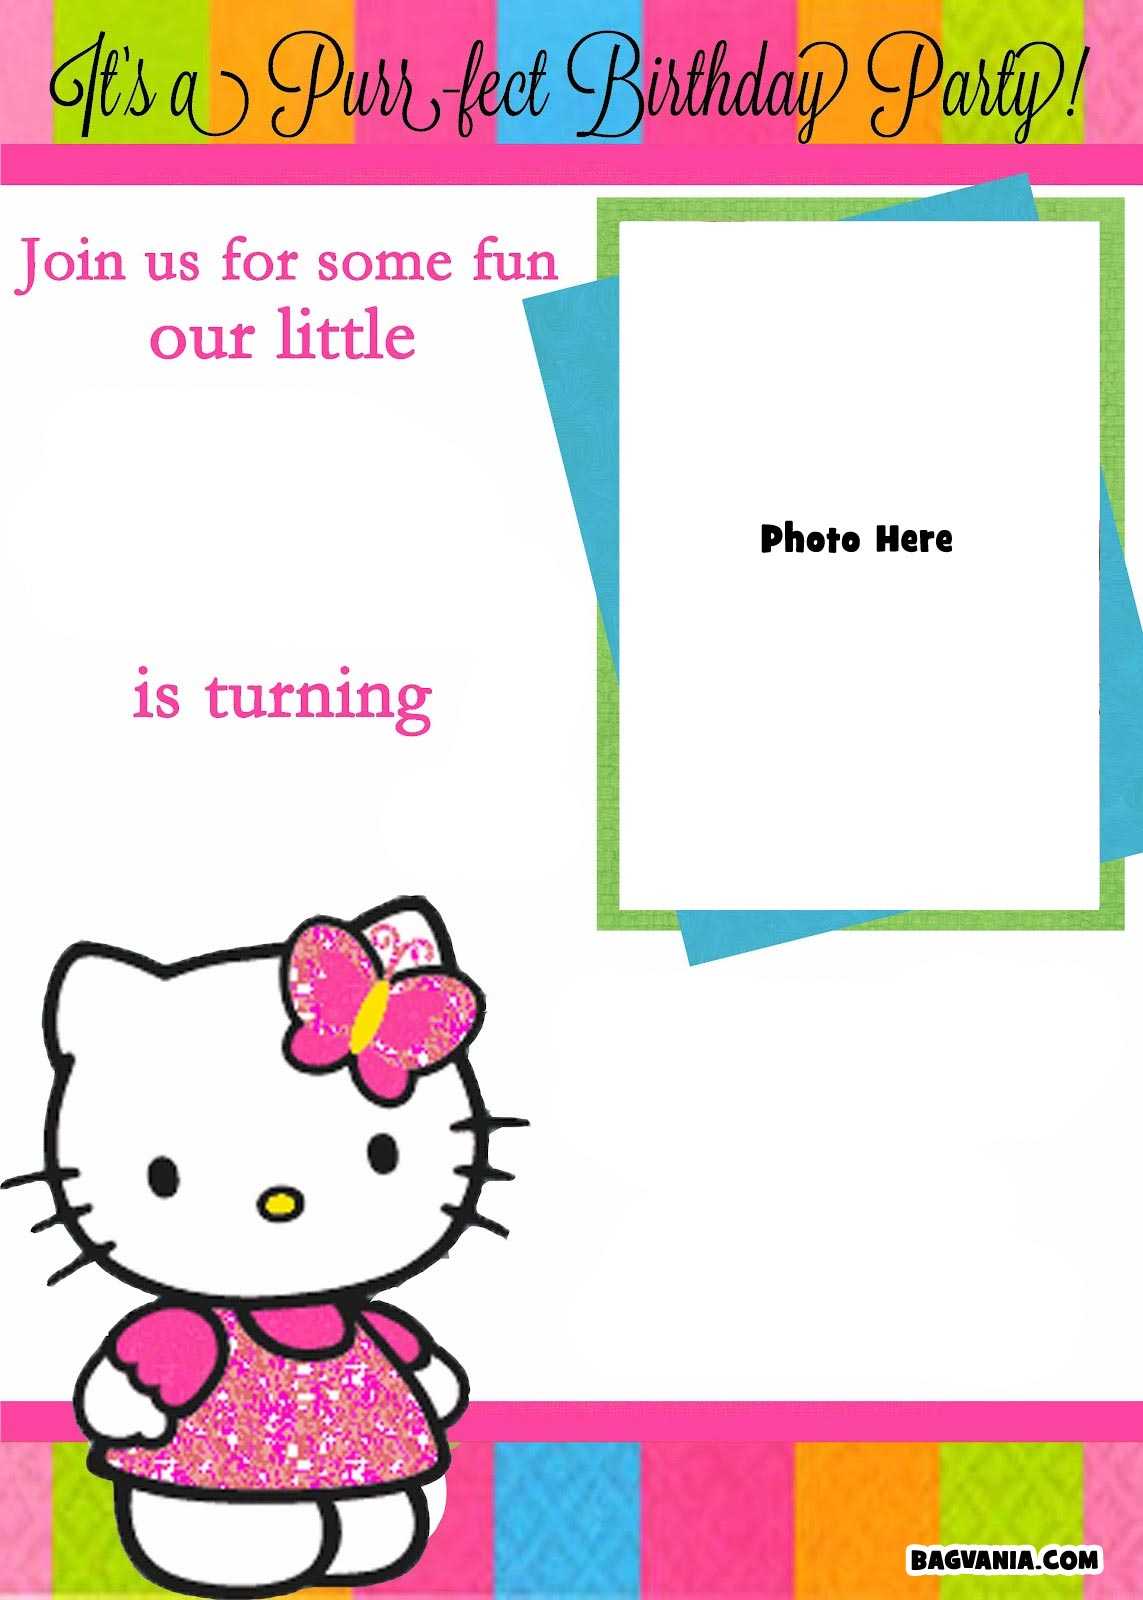 Free Printable Hello Kitty Birthday Invitations – Bagvania With Regard To Hello Kitty Birthday Card Template Free